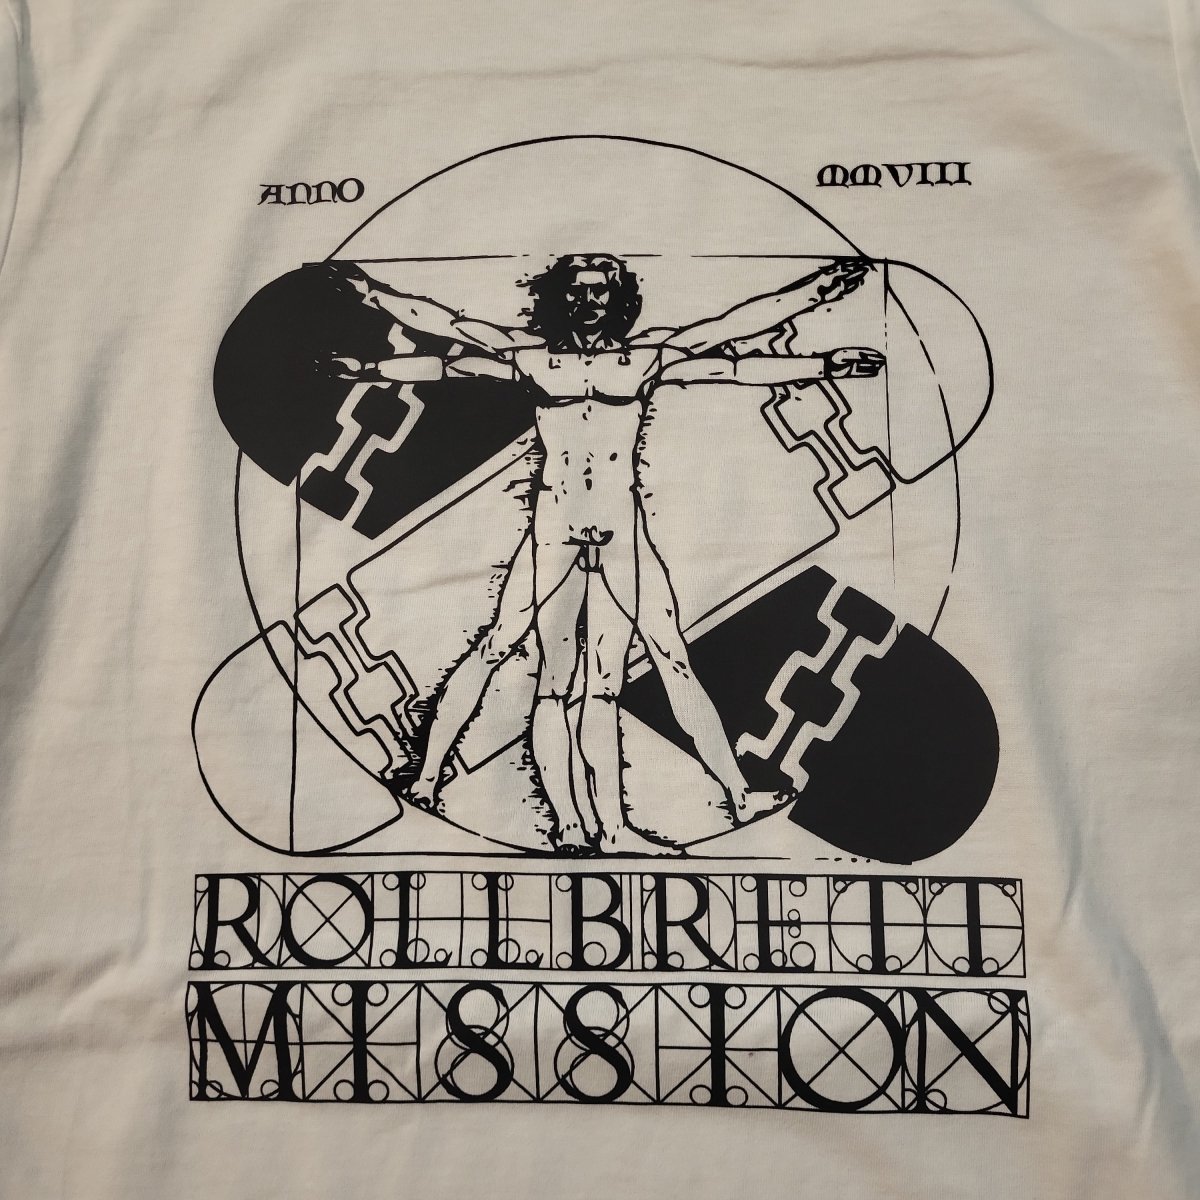 Rollbrett Mission Vitruvian Organic T-Shirt weiß - Shirts & Tops - Rollbrett Mission